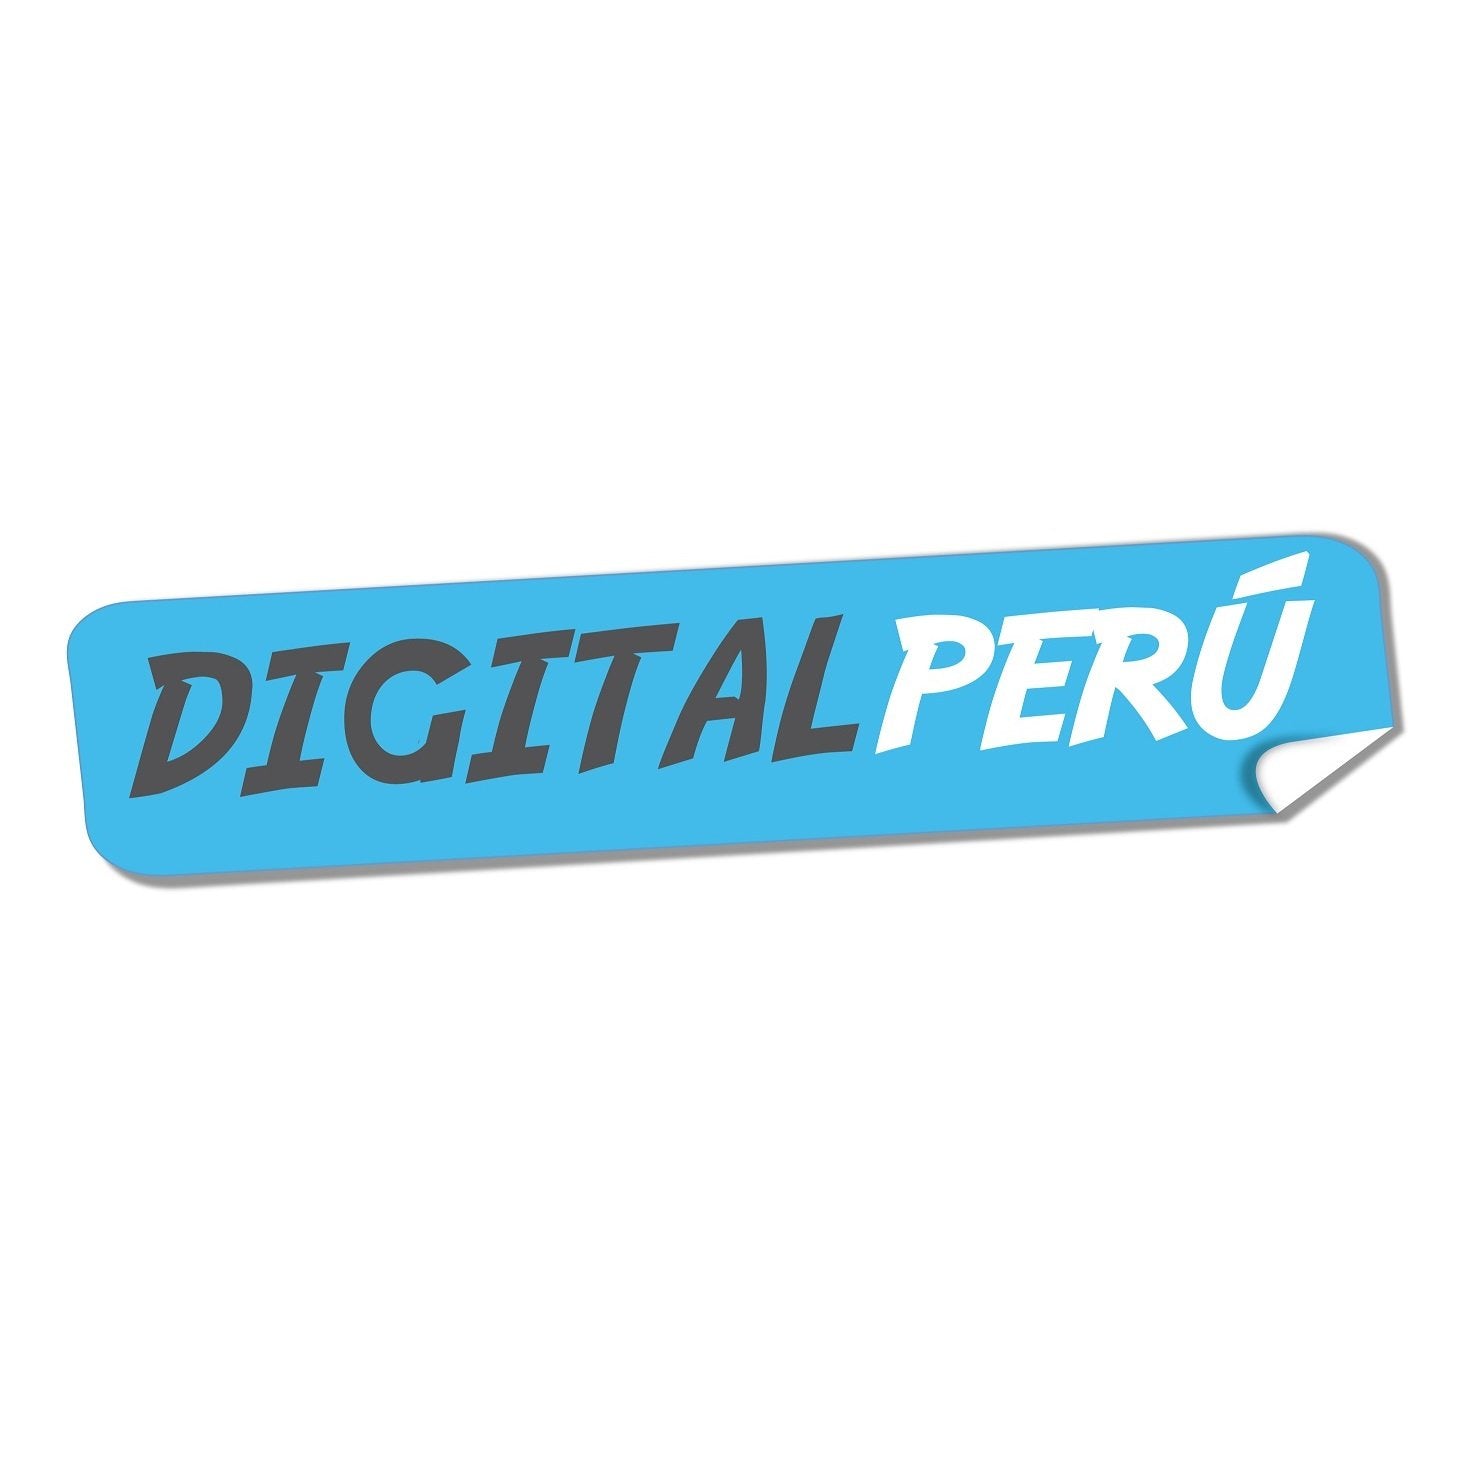 www.digital-peru.com